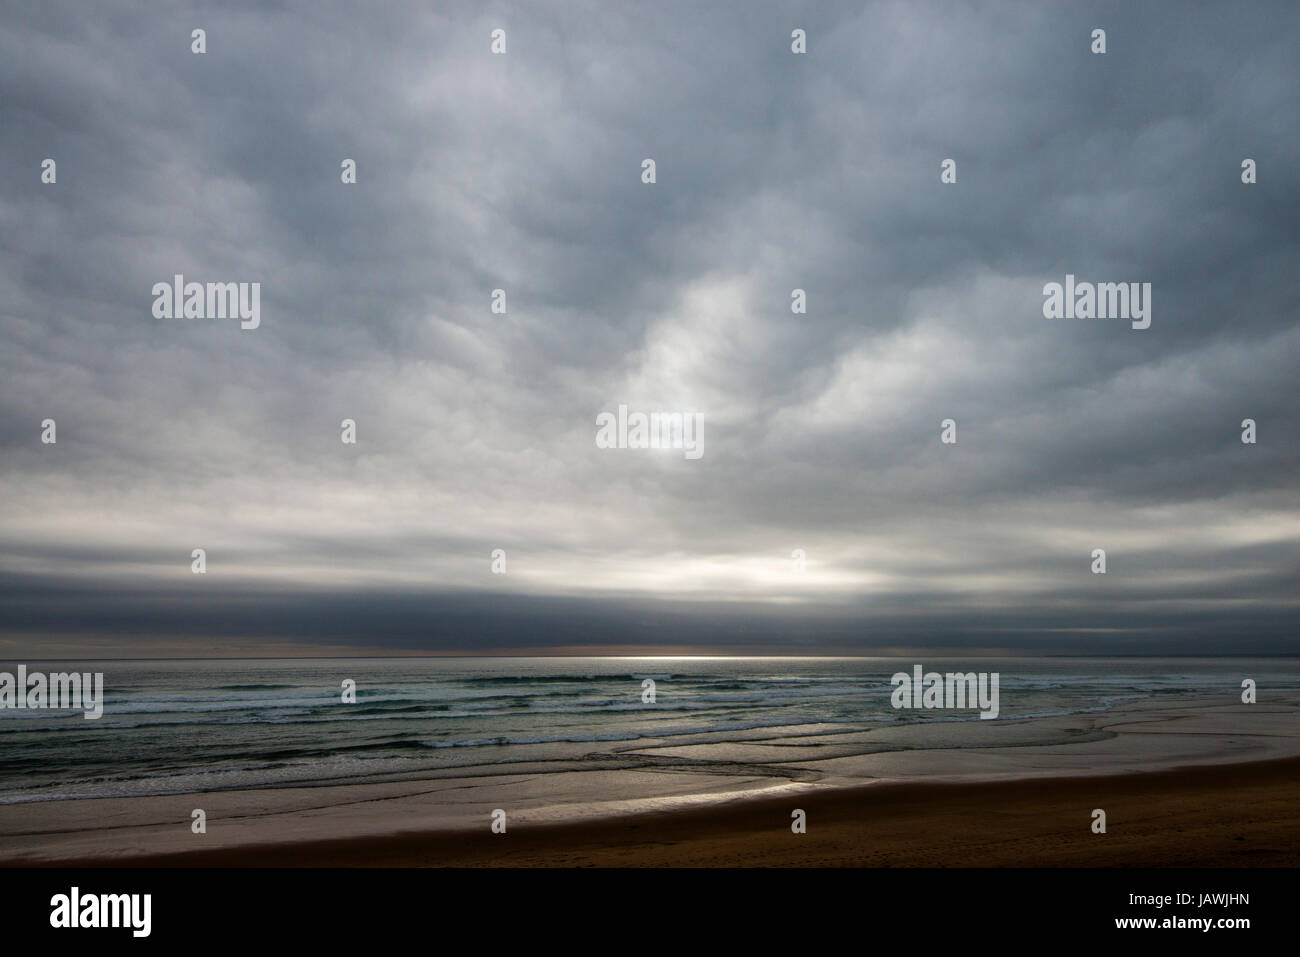 Graue Wolken hängen über einem verlassenen Strand an einem stürmischen Tag. Stockfoto